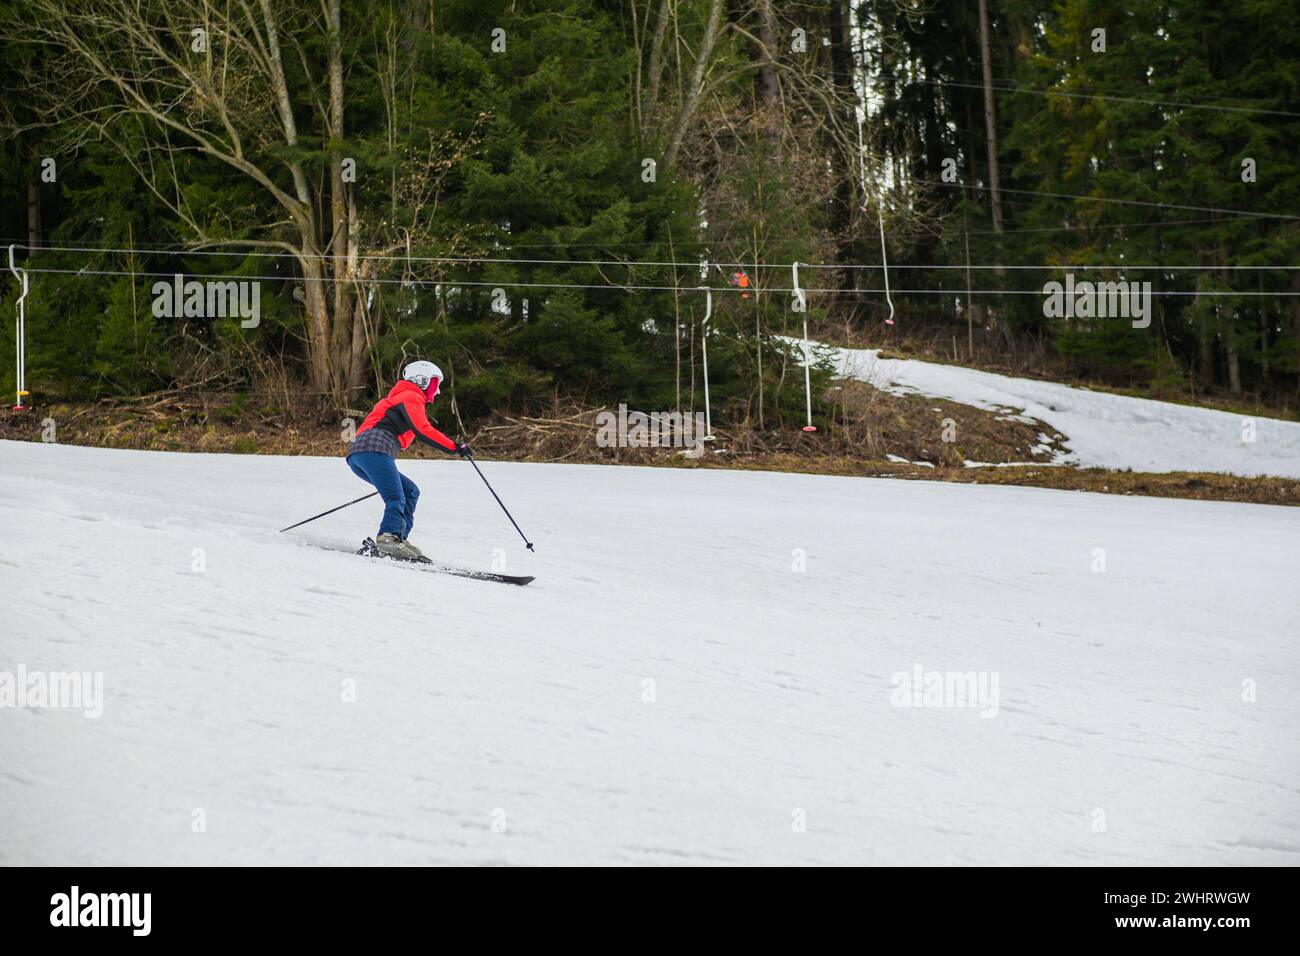 Ein Skifahrer fährt auf einem steilen Hügel Ski. Stockfoto